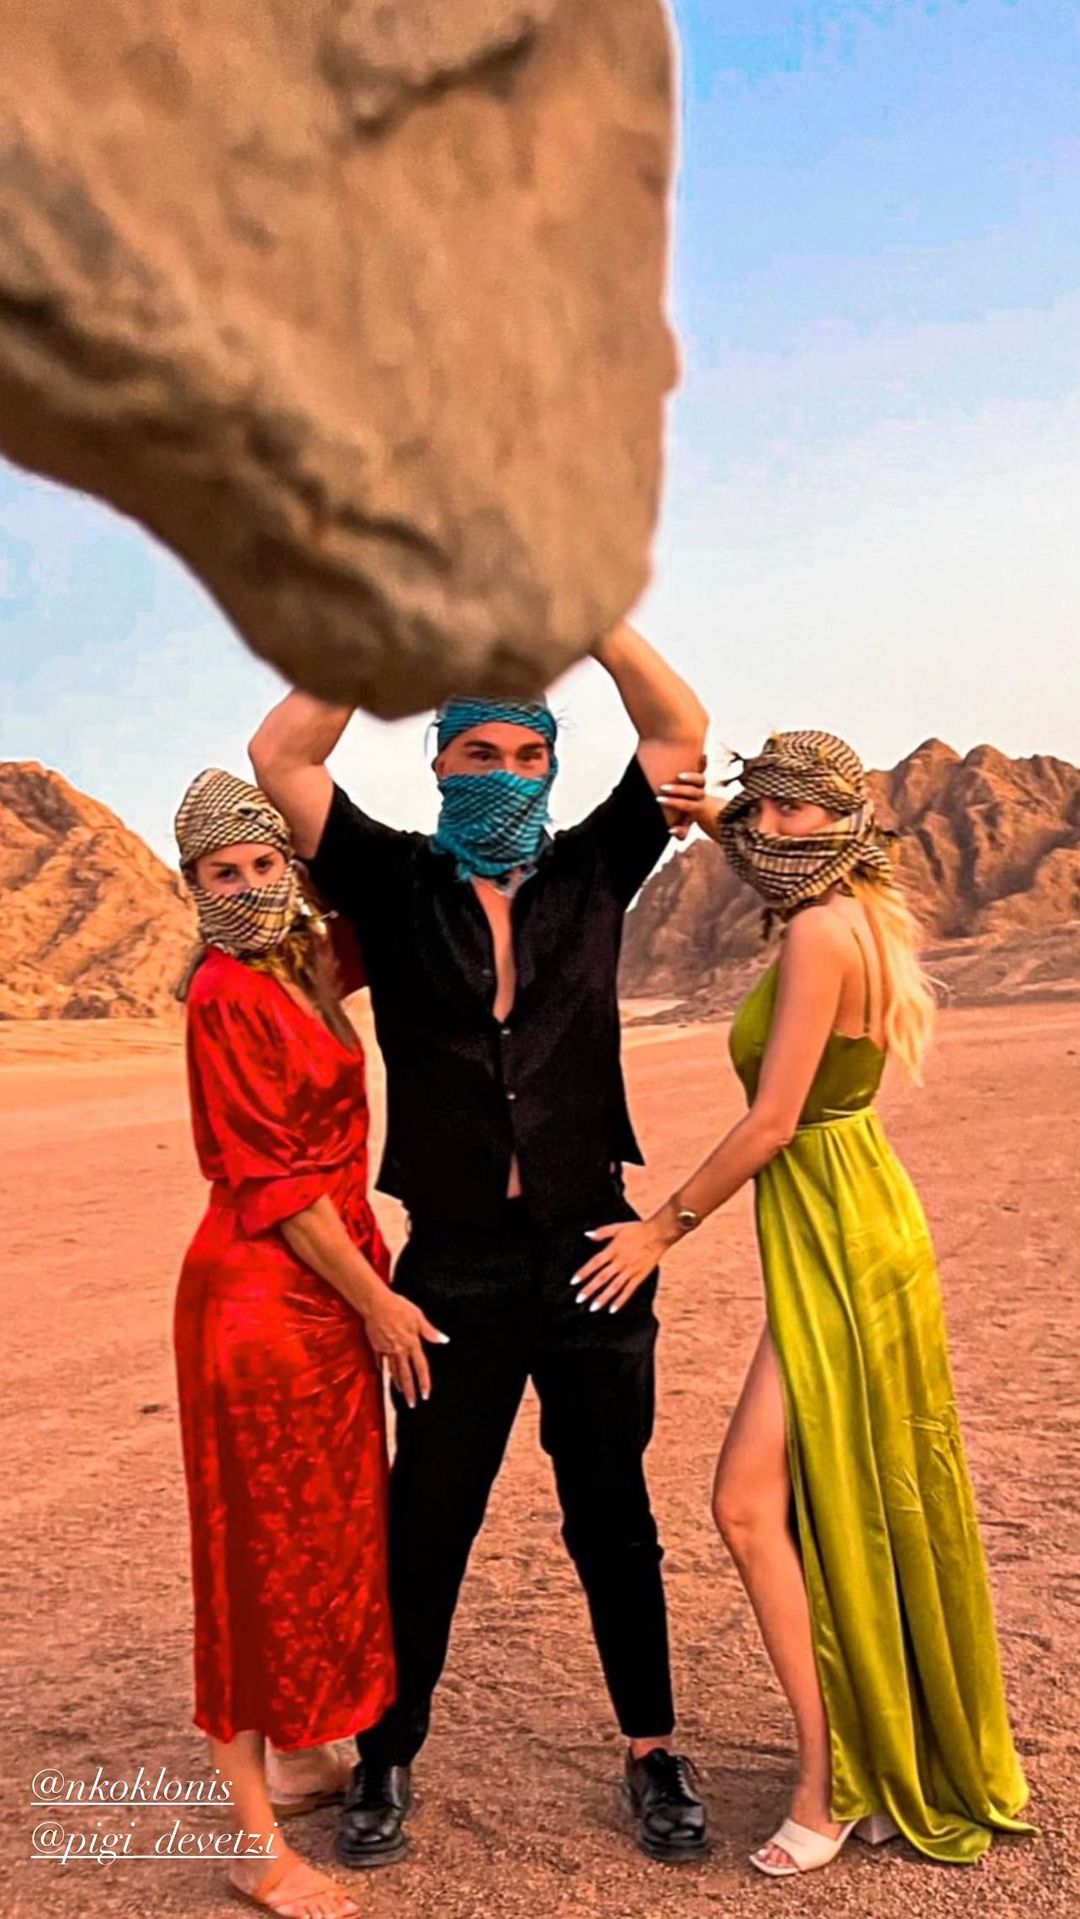 Κατερίνα Καινούργιου: Το φωτογραφικό άλμπουμ από το υπερλούξ ταξίδι της στην Έρημο με τον Νίκο Κοκλώνη 